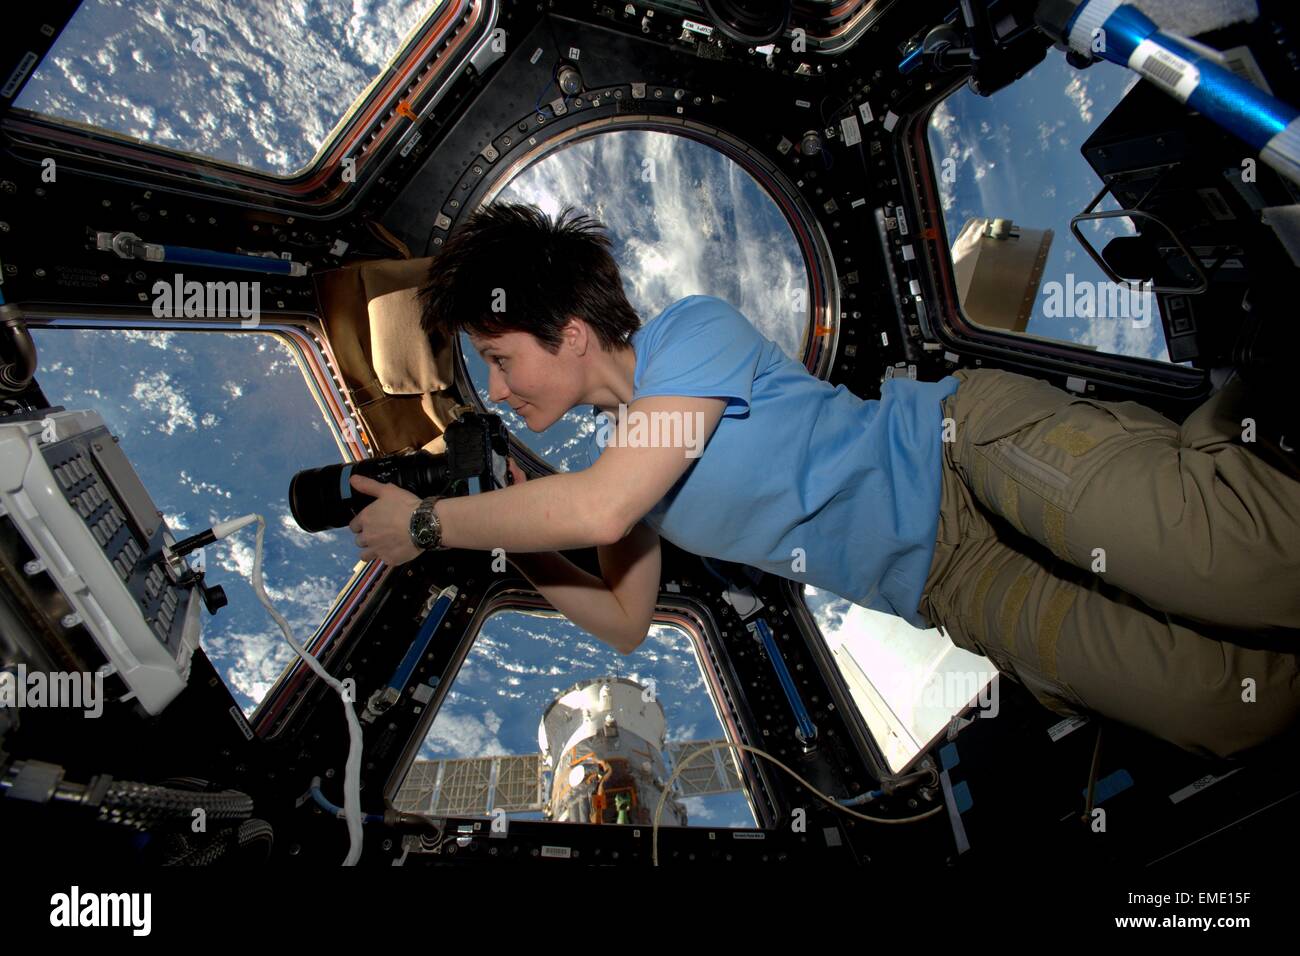 Internationale Raumstation Expedition 42 europäischen Weltraum Agentur Astronaut Samantha Cristoforetti nimmt Fotos aus dem Inneren der Kopula Ausschau auf die Erde 3. Februar 2015 in der Erdumlaufbahn. Stockfoto